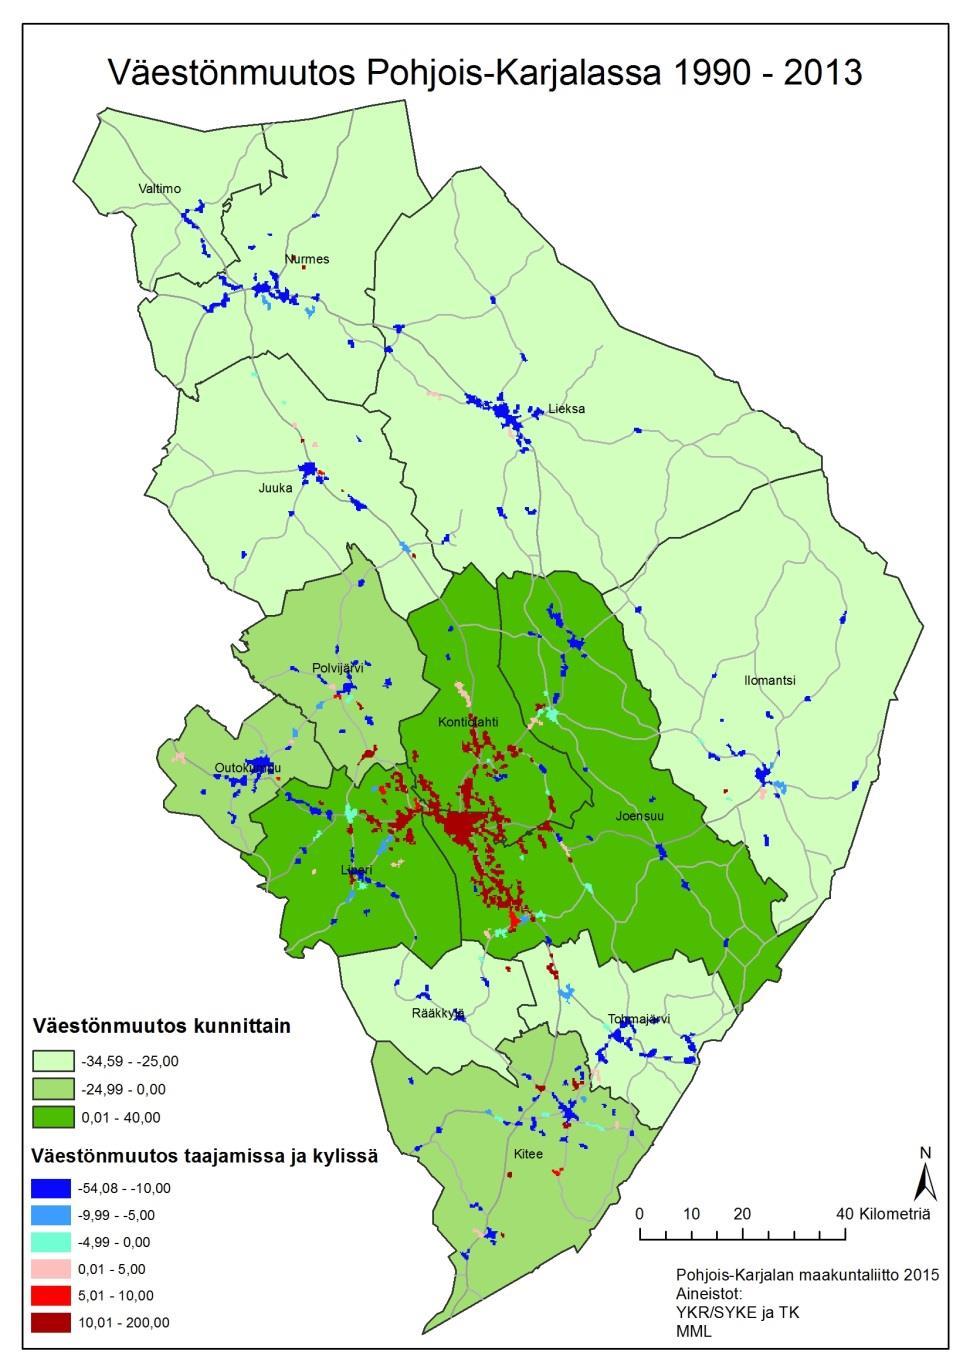 Maakunnan väkiluku vuonna 2013 oli 163 724 henkilöä ja väestöntiheys 7,6 asukasta/km². Vuosien 1990 2013 välillä maakunnan väkiluku on ollut laskusuunnassa.